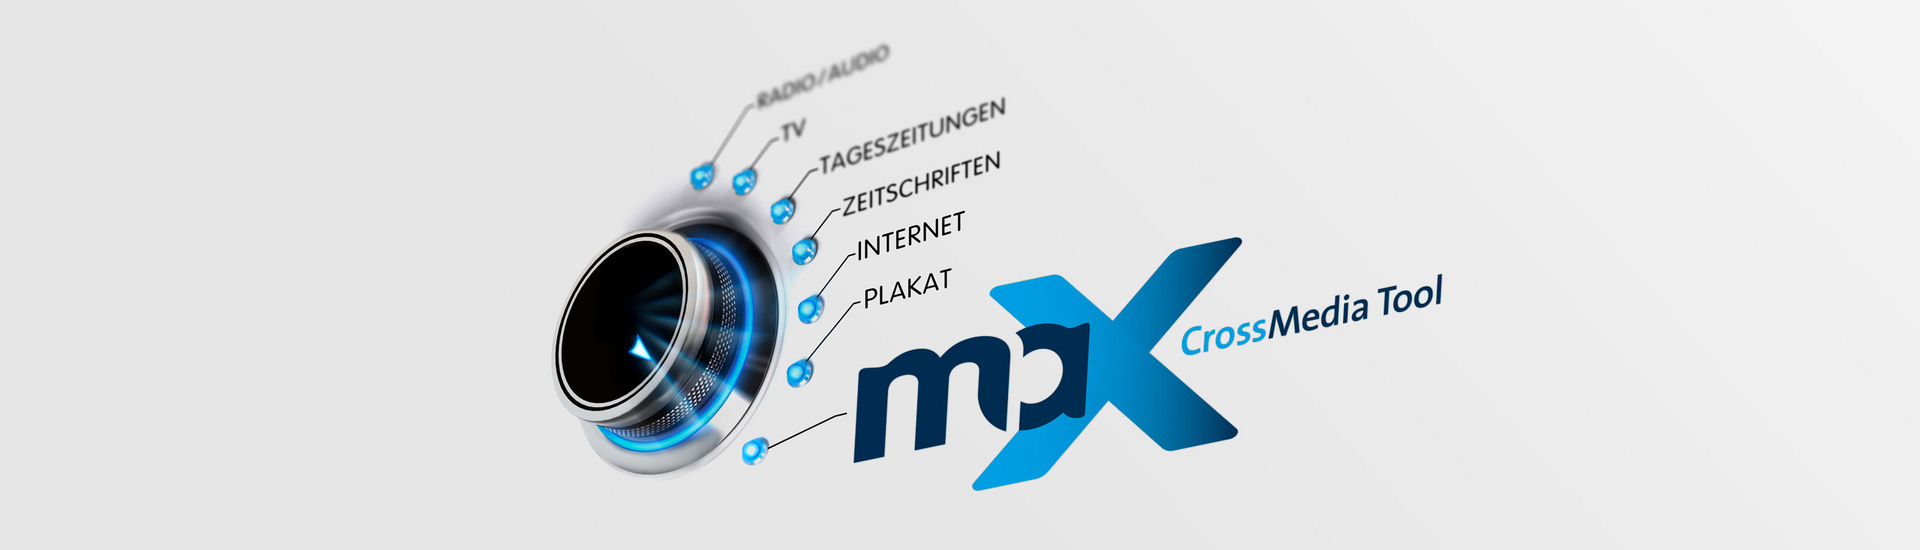 maX CrossMedia Tool Slidermotiv